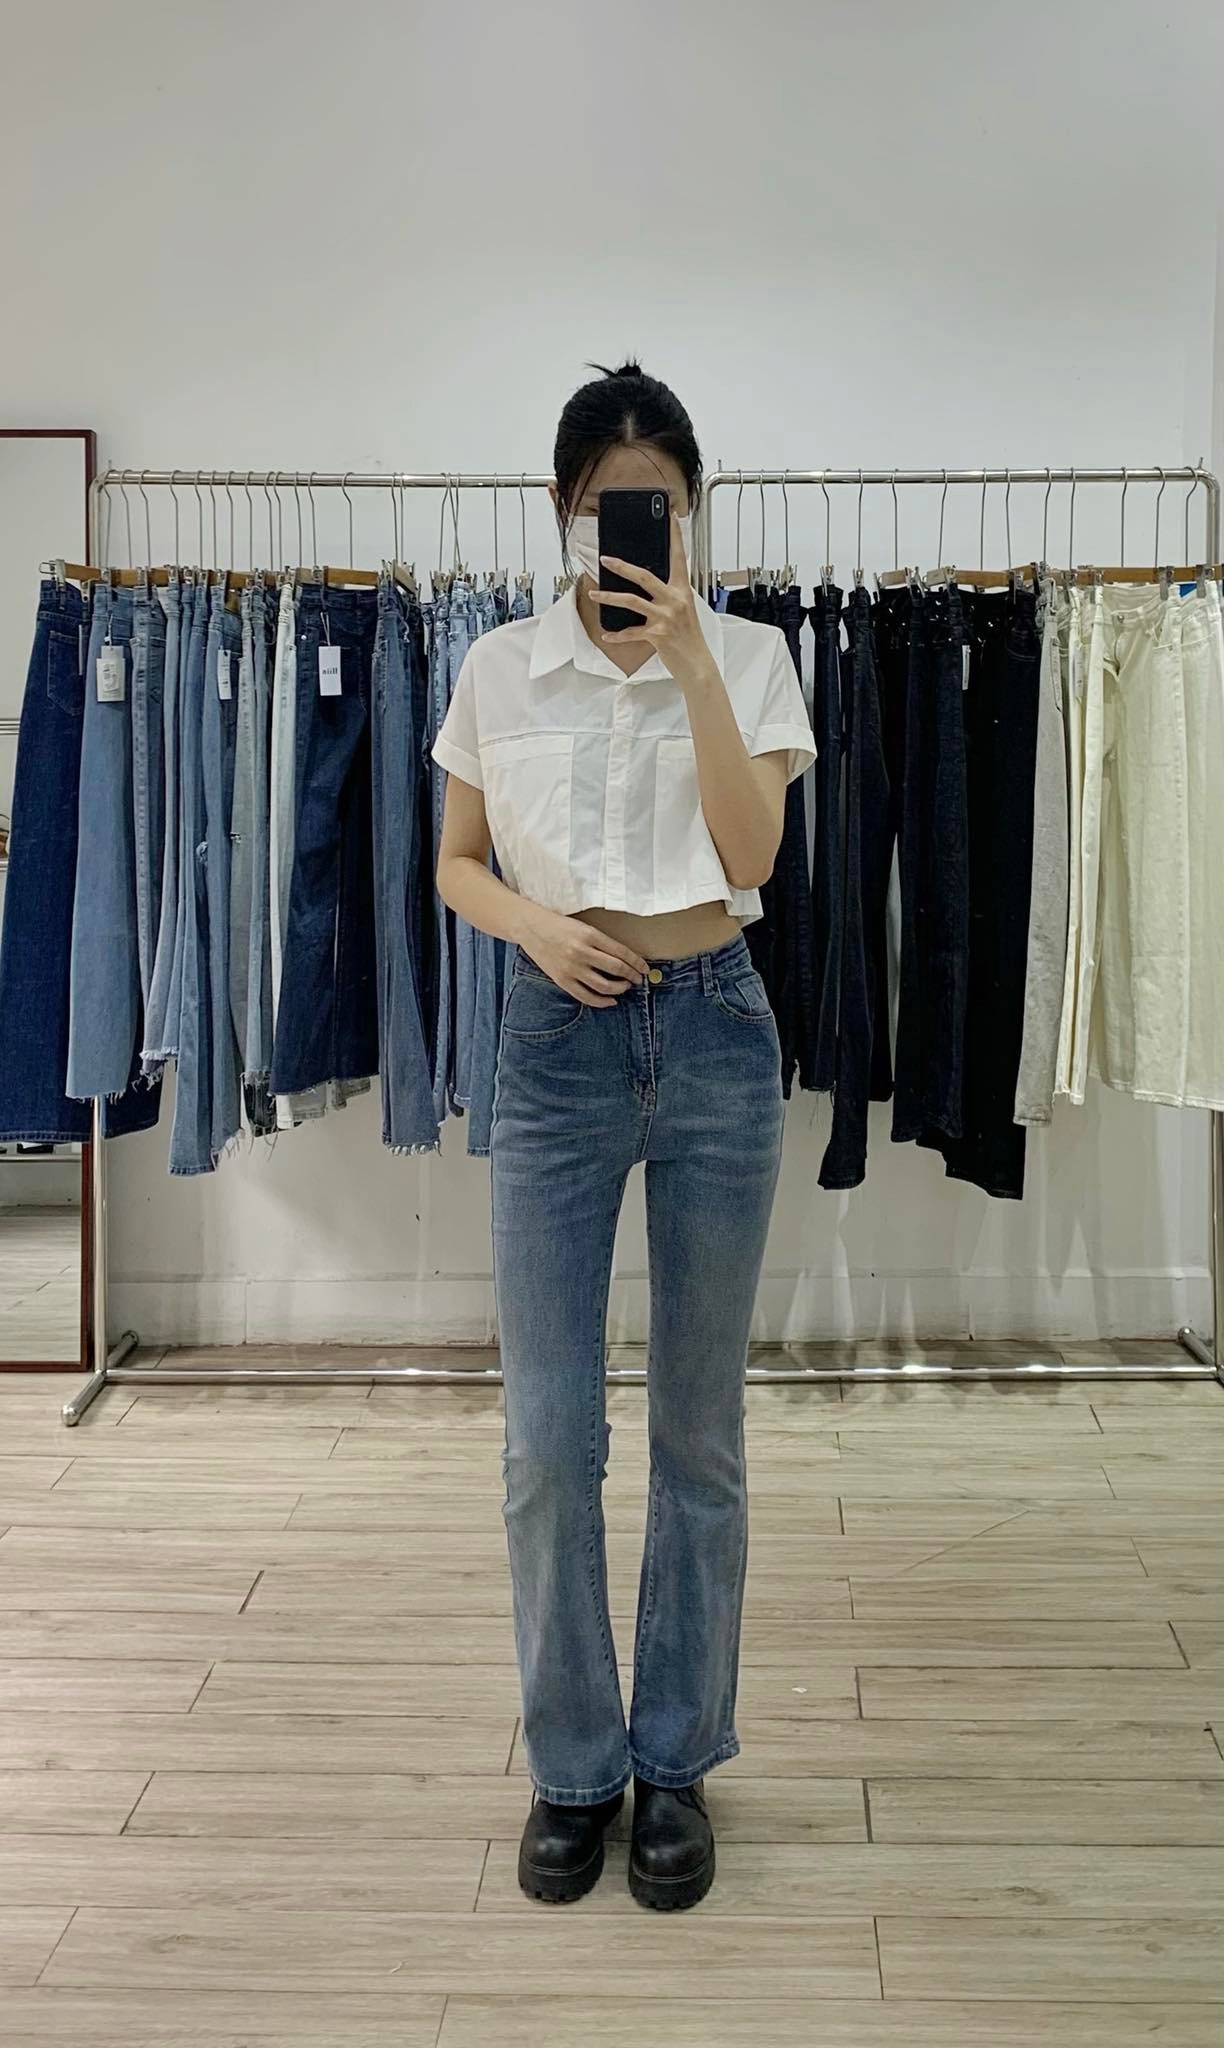 Ghé các shop bán quần jeans ở Hà Nội, mình gom được 10 mẫu đáng mua: Vừa kéo chân lại ăn gian vòng 3 siêu đỉnh - Ảnh 15.